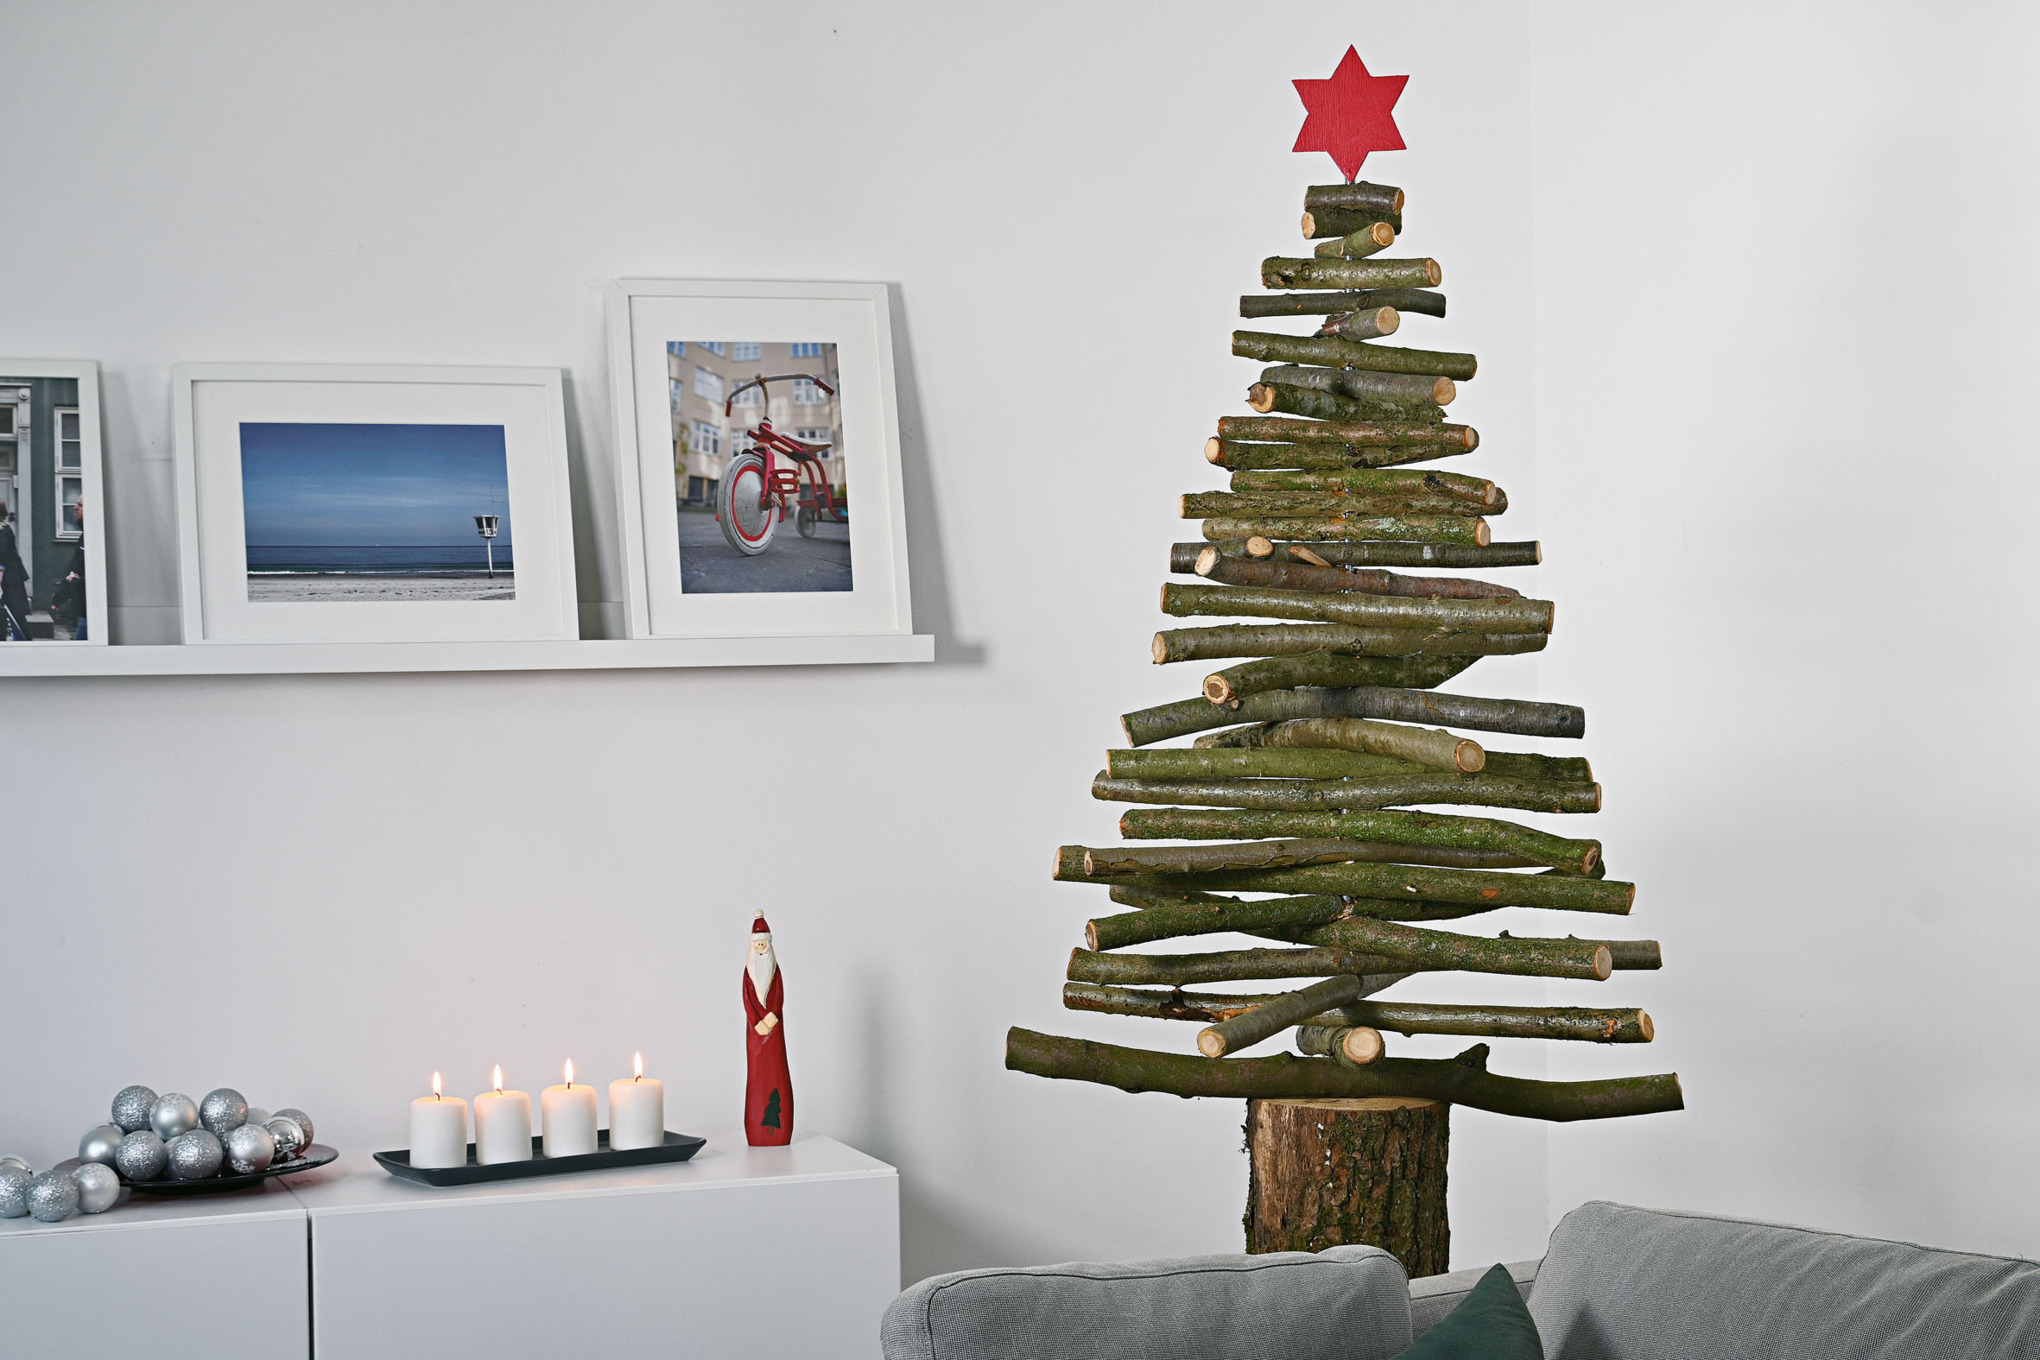 Árbol de Navidad casero de ramas de madera con una estrella roja en la punta en un interior con motivos navideños